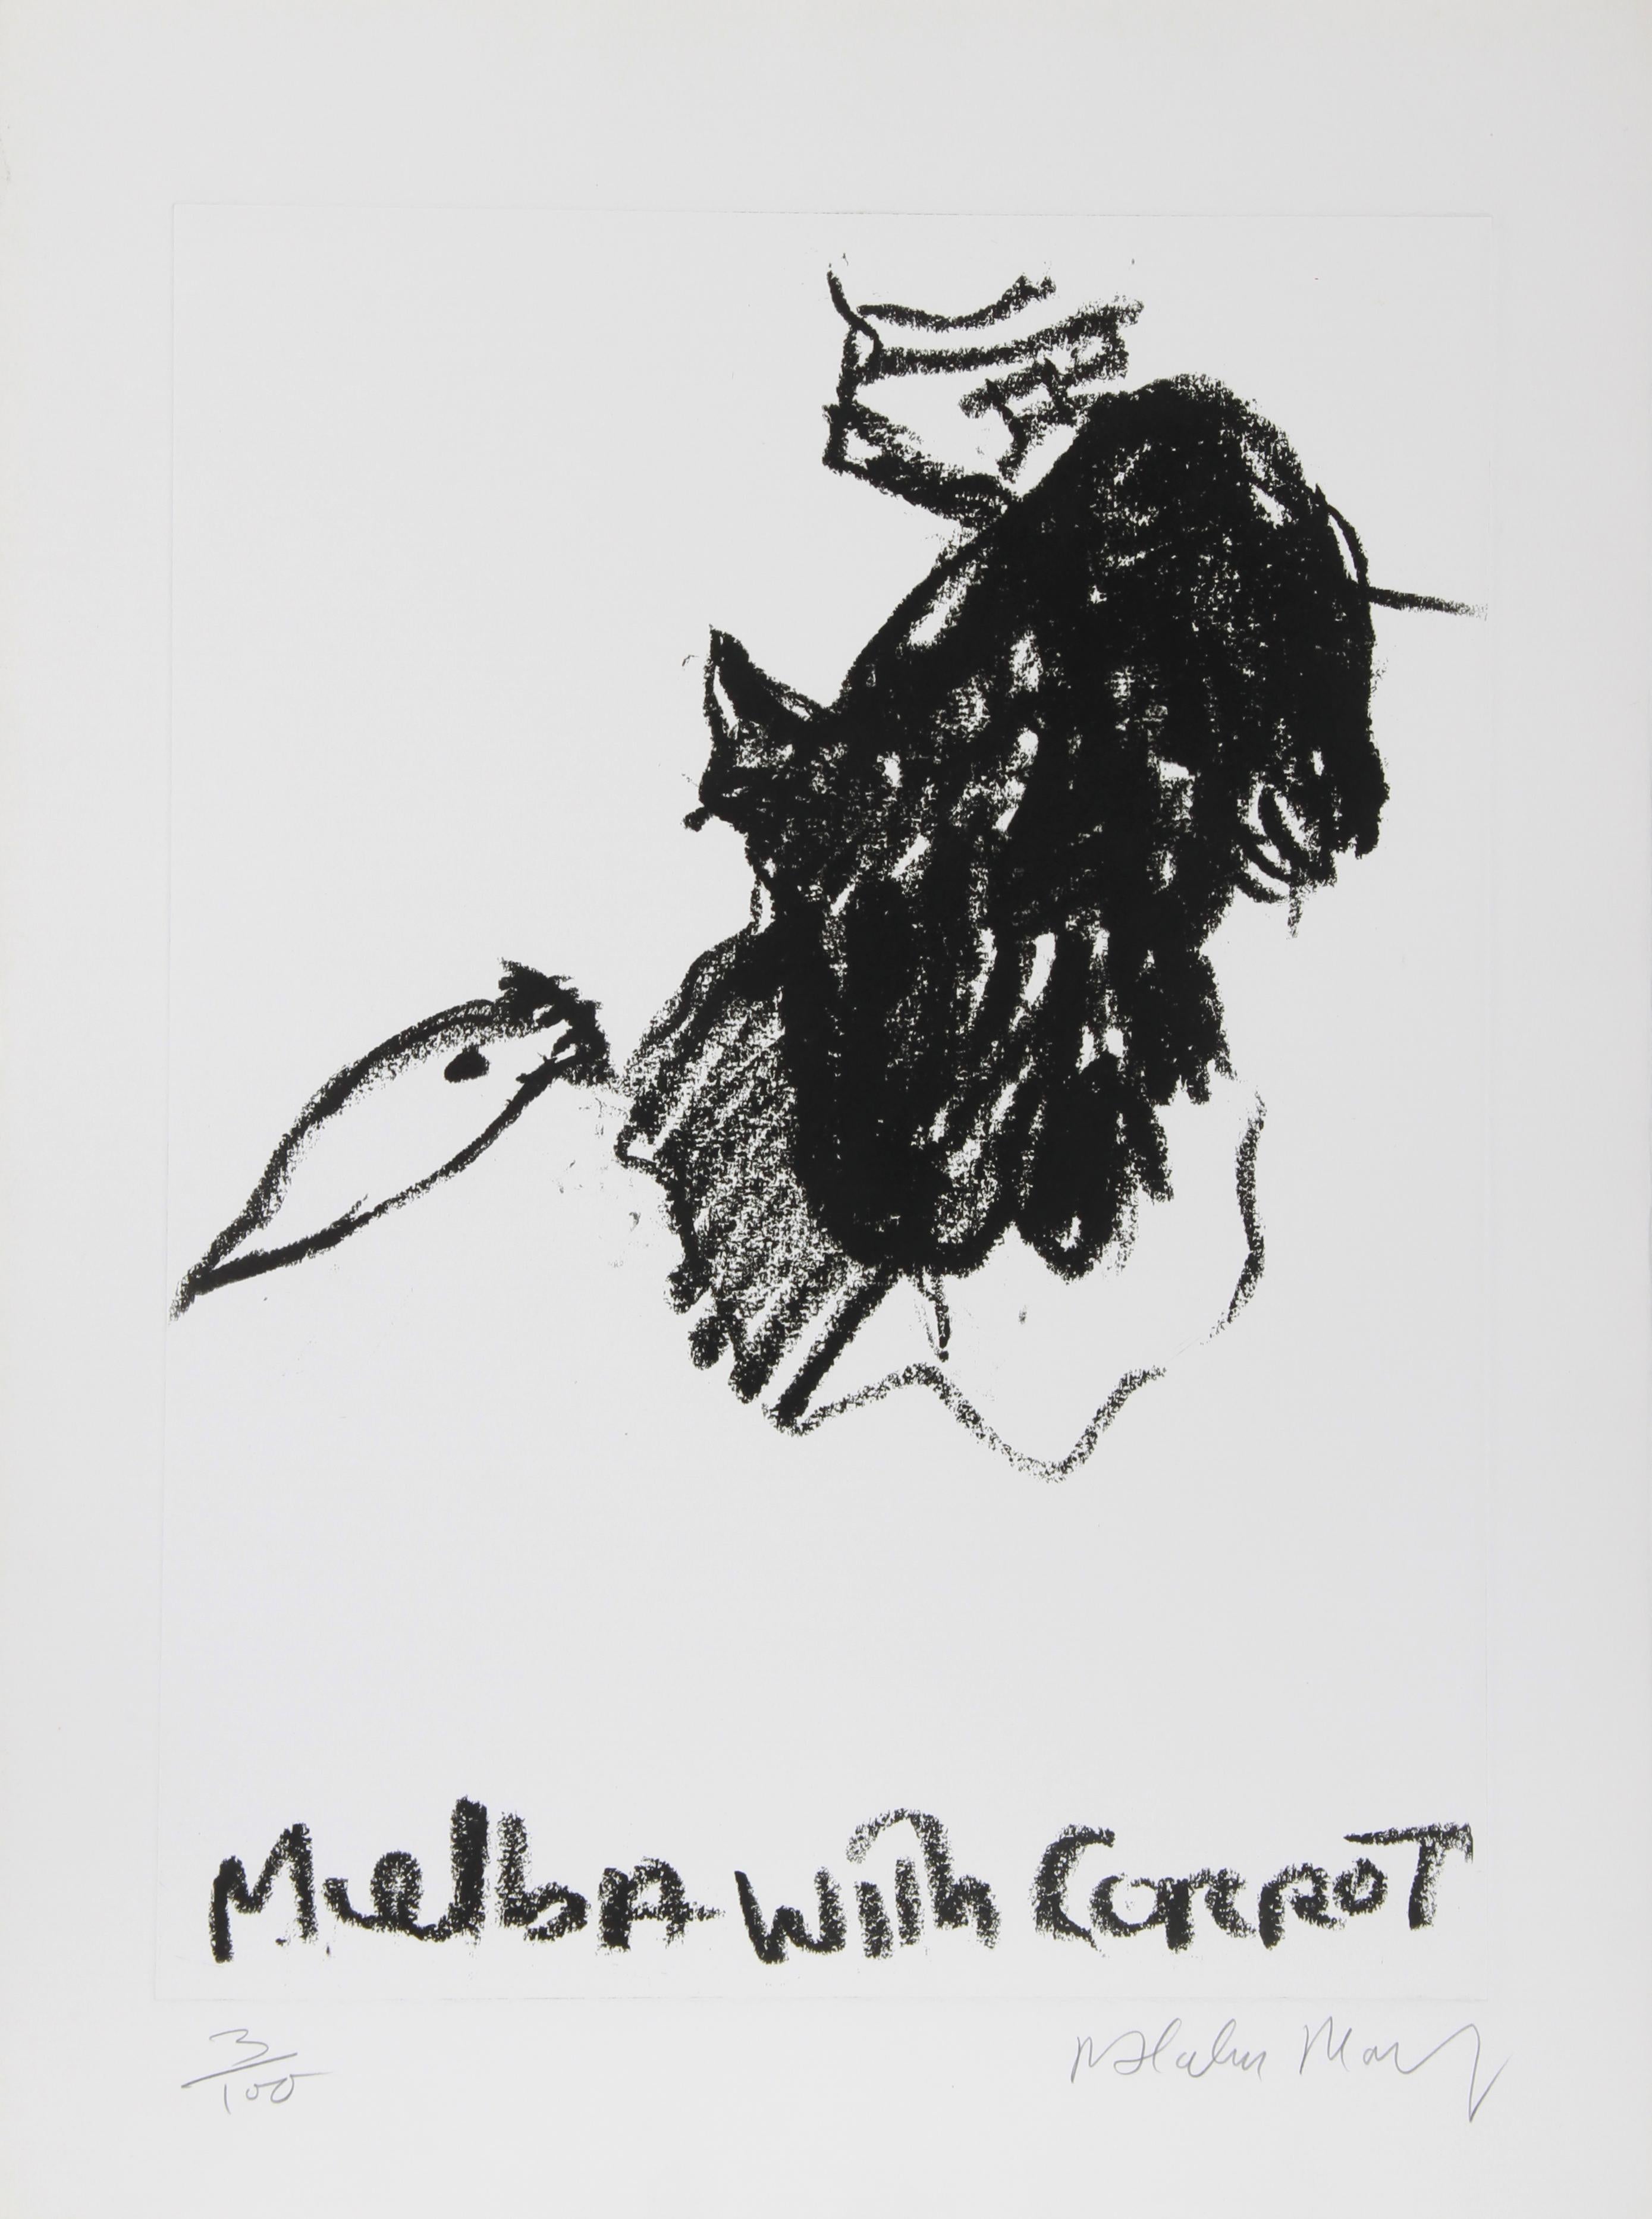 Artiste : Malcolm Morley, britannique (1931 - 2018)
Titre : Melba à la carotte
Médium : Eau-forte, signée et numérotée au crayon
Edition : 100
Taille de l'image : 22 x 17.5 pouces
Taille : 30 in. x 22 in. (76,2 cm x 55,88 cm)